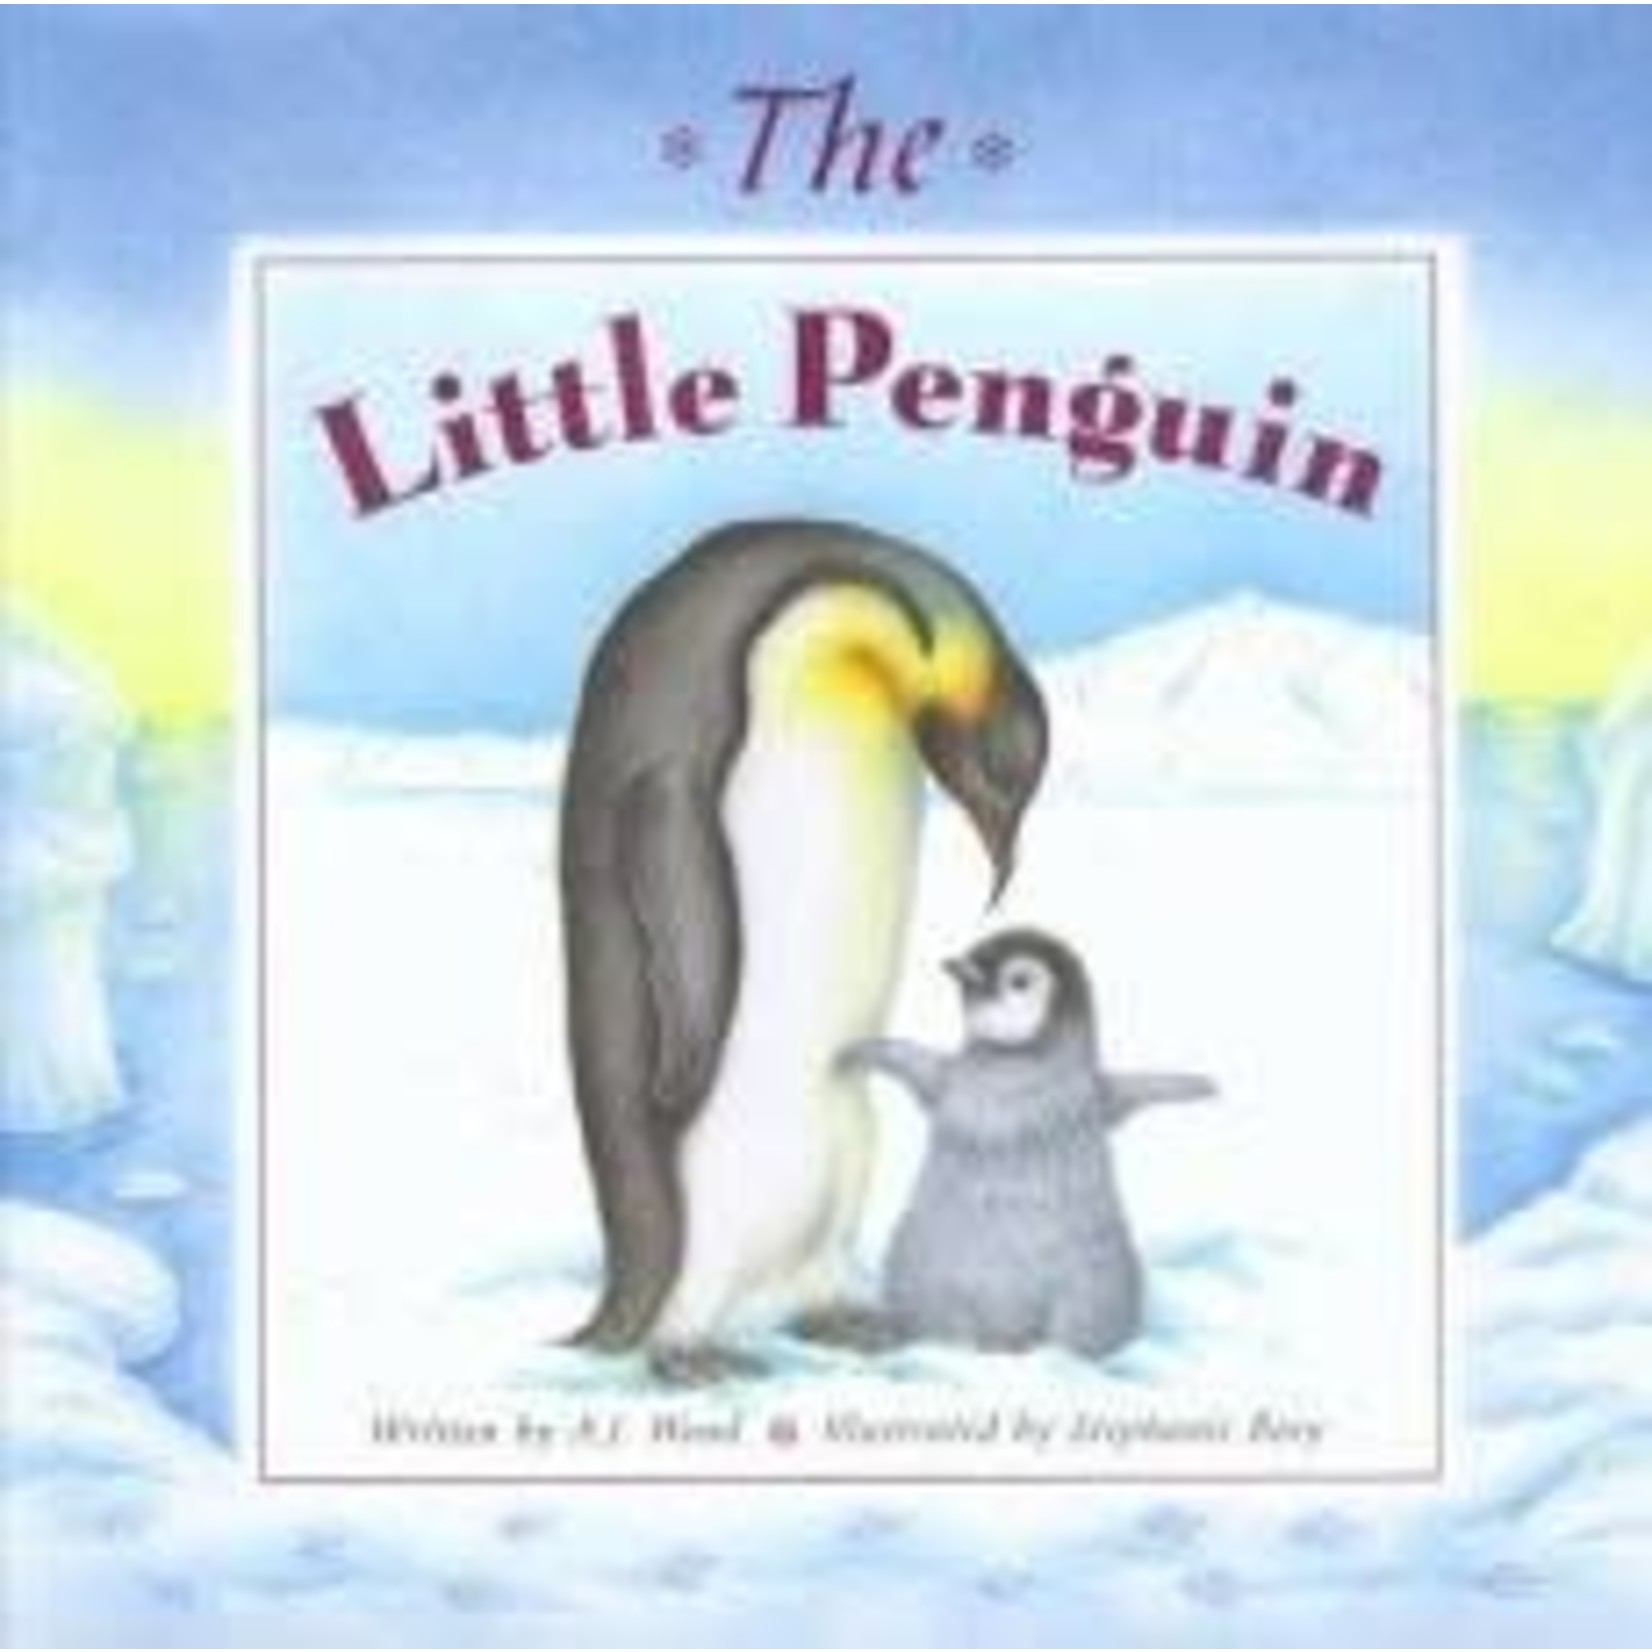 A.J. Wood The Little Penguin